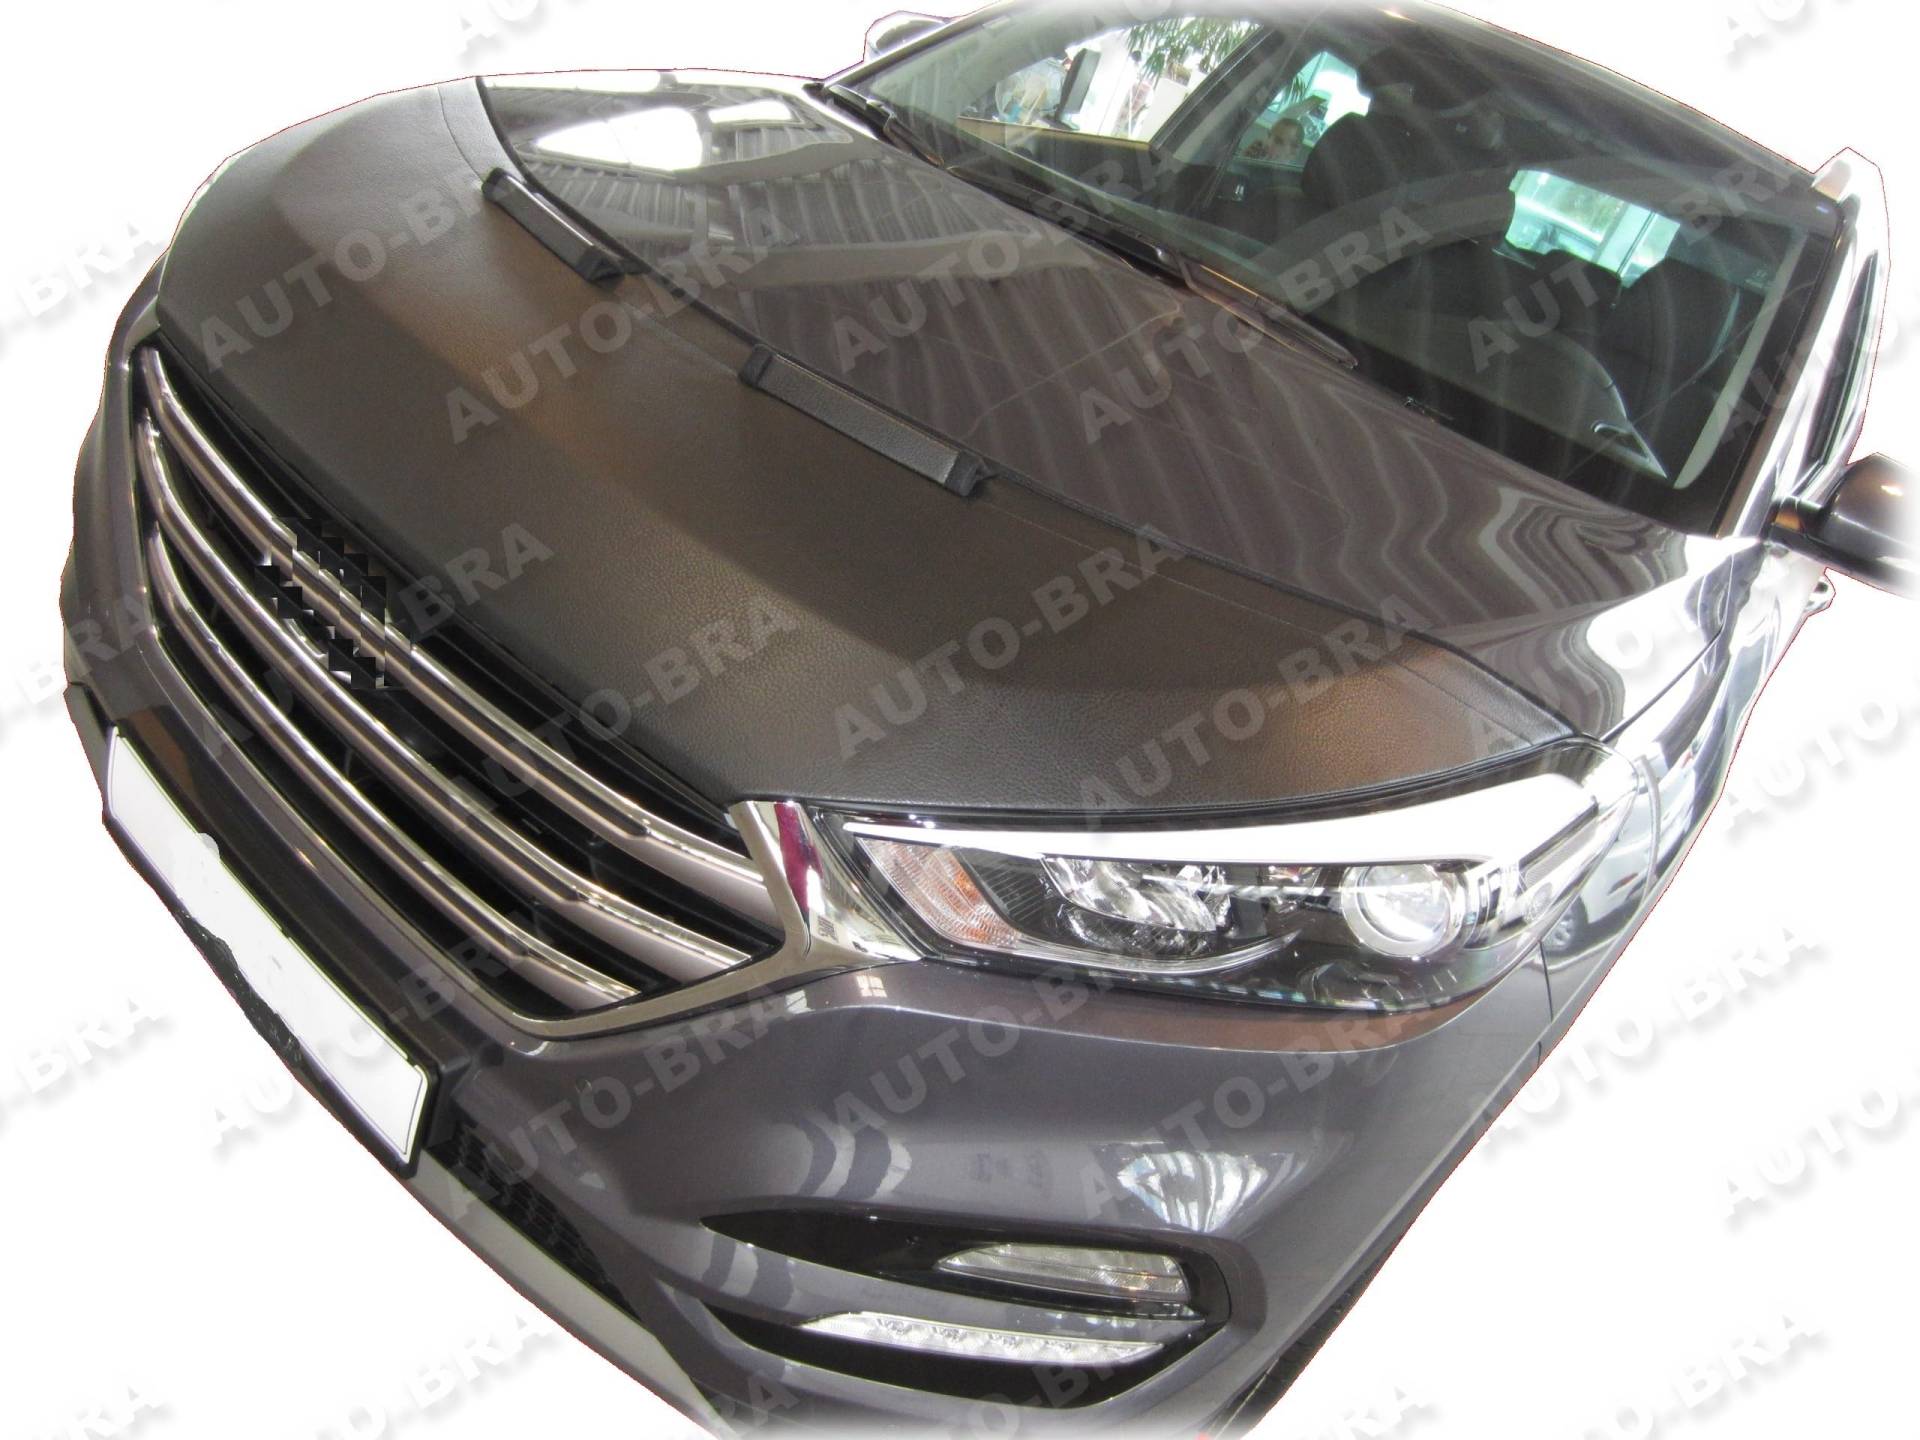 AB-00996 Auto BRA kompatibel mit Hyundai Tucson Bj. 2015-2020 Haubenbra Steinschlagschutz Tuning Bonnet Bra von AUTO-BRA